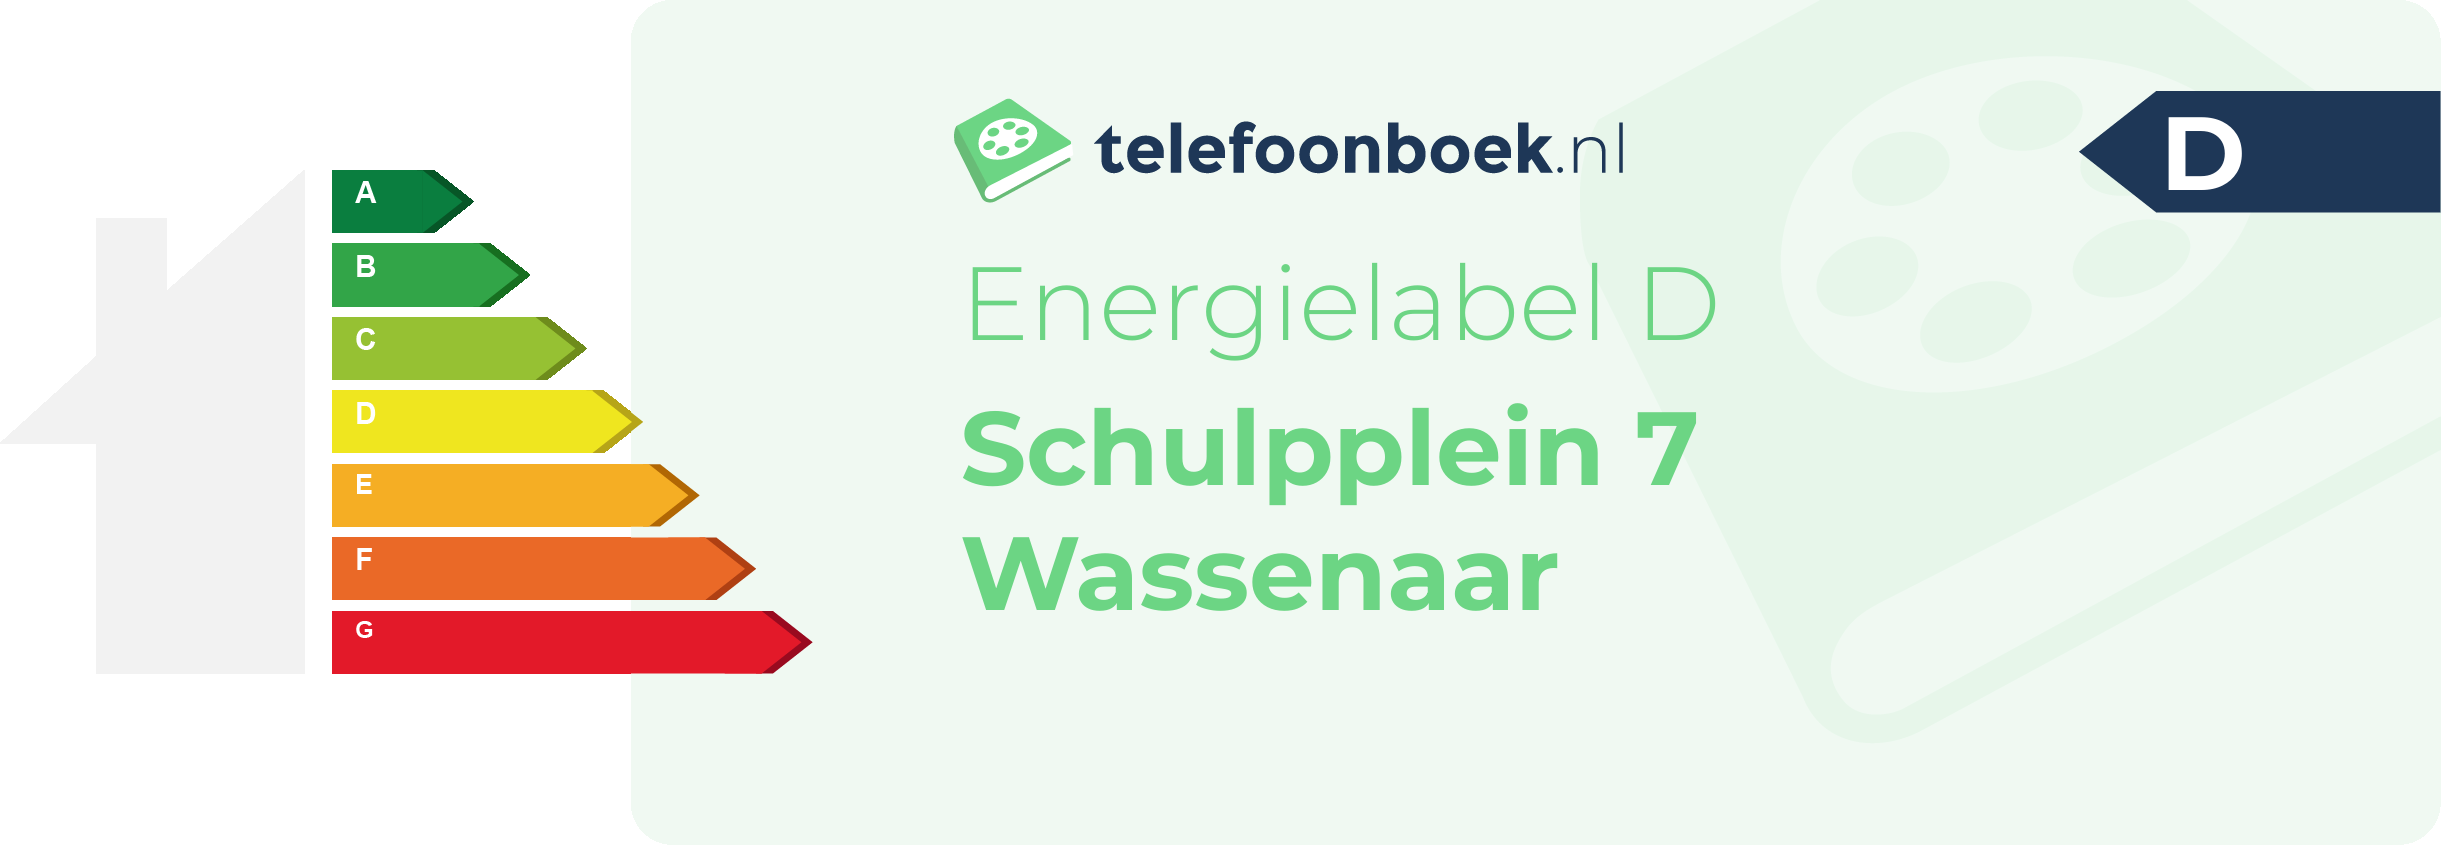 Energielabel Schulpplein 7 Wassenaar